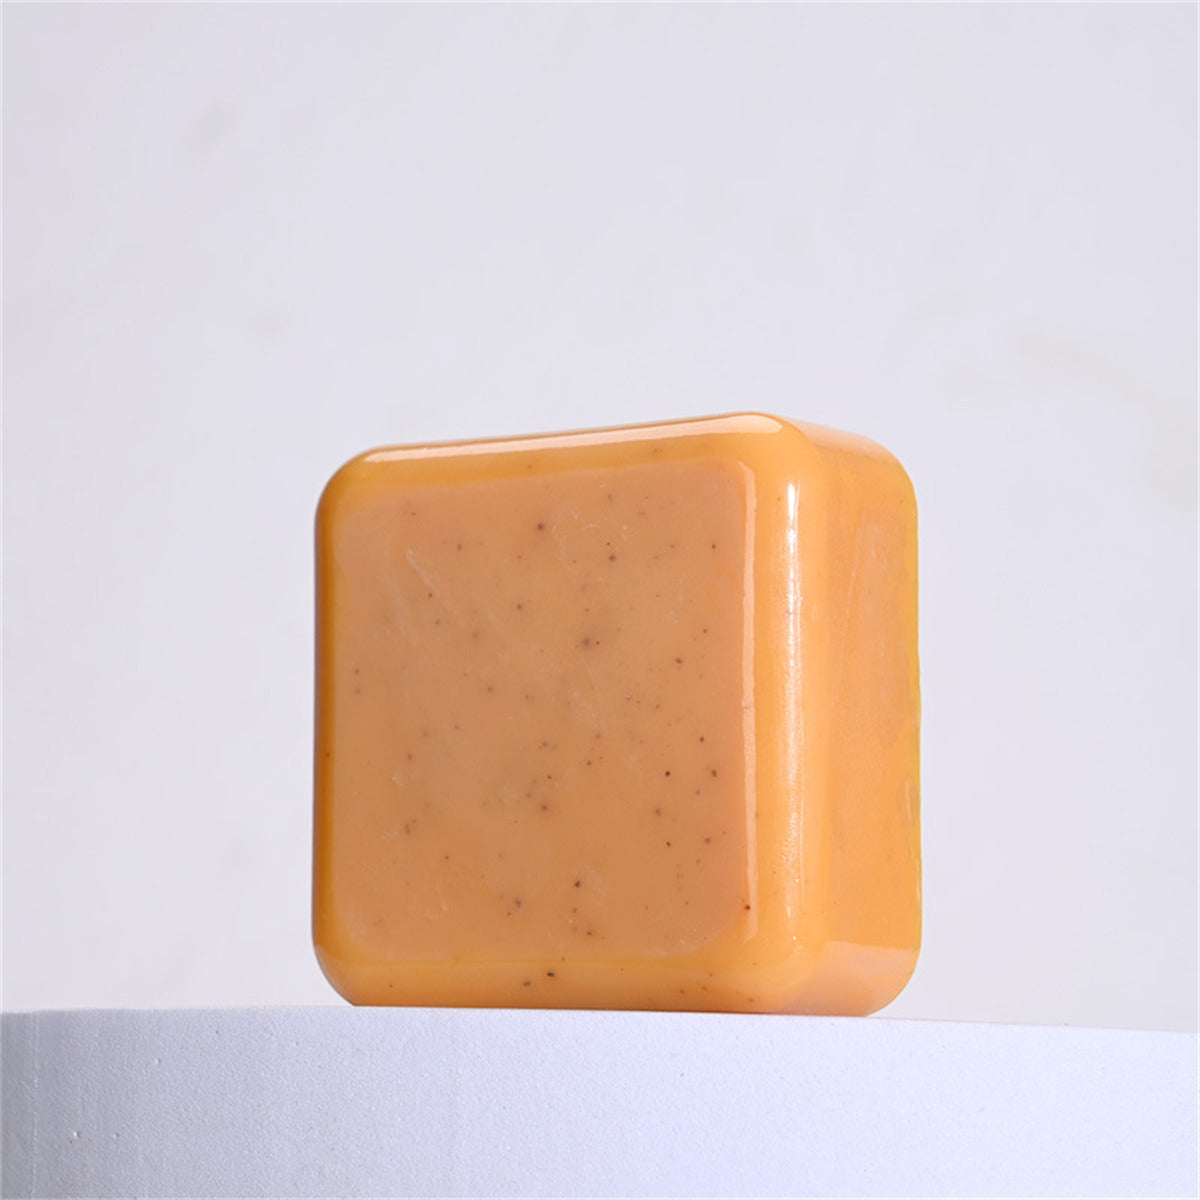 Bade-Kurkuma-Seifenstücke gegen dunkle Flecken, handgemachte Seife für Gesicht und Körper, natürliche Kurkuma-Seife für die Haut, 2er-Pack